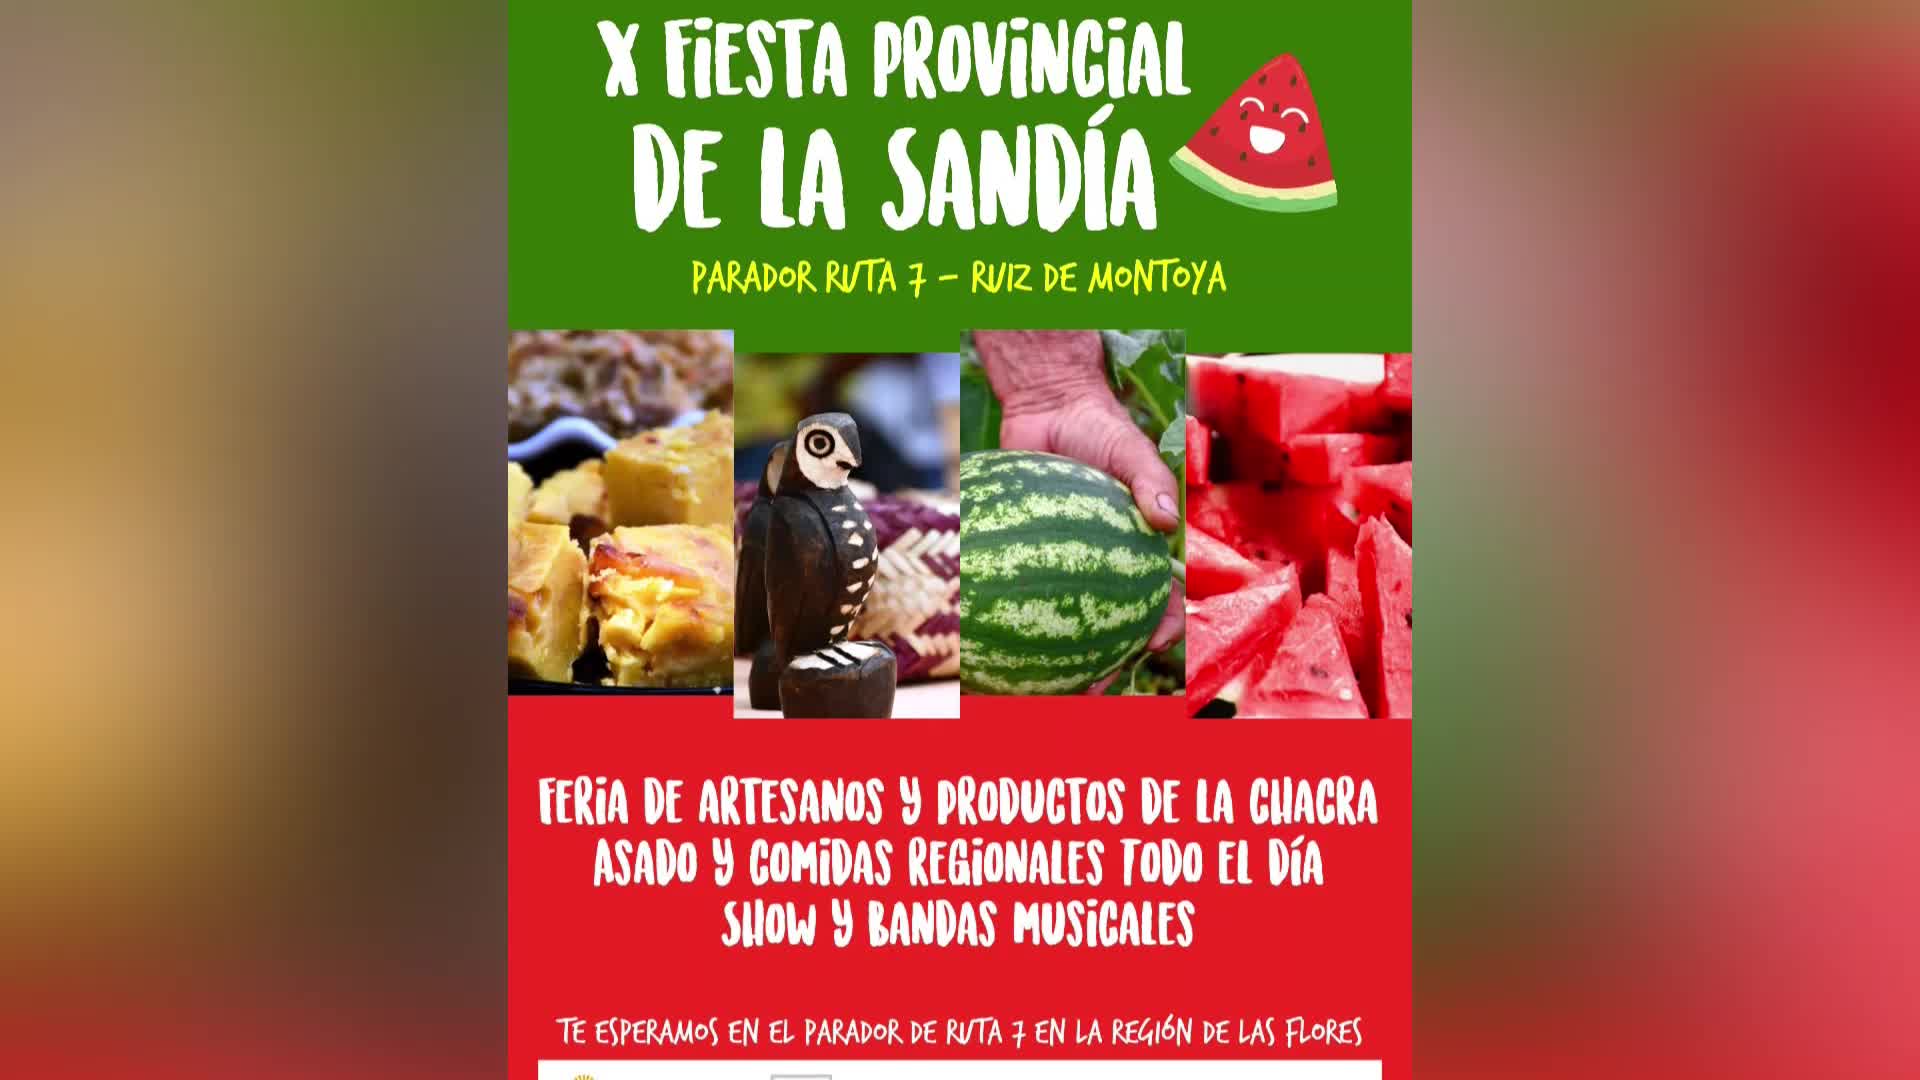 X Fiesta Provincial de la Sandia del 27 al 29 de diciembre en Ruiz de Montoya 